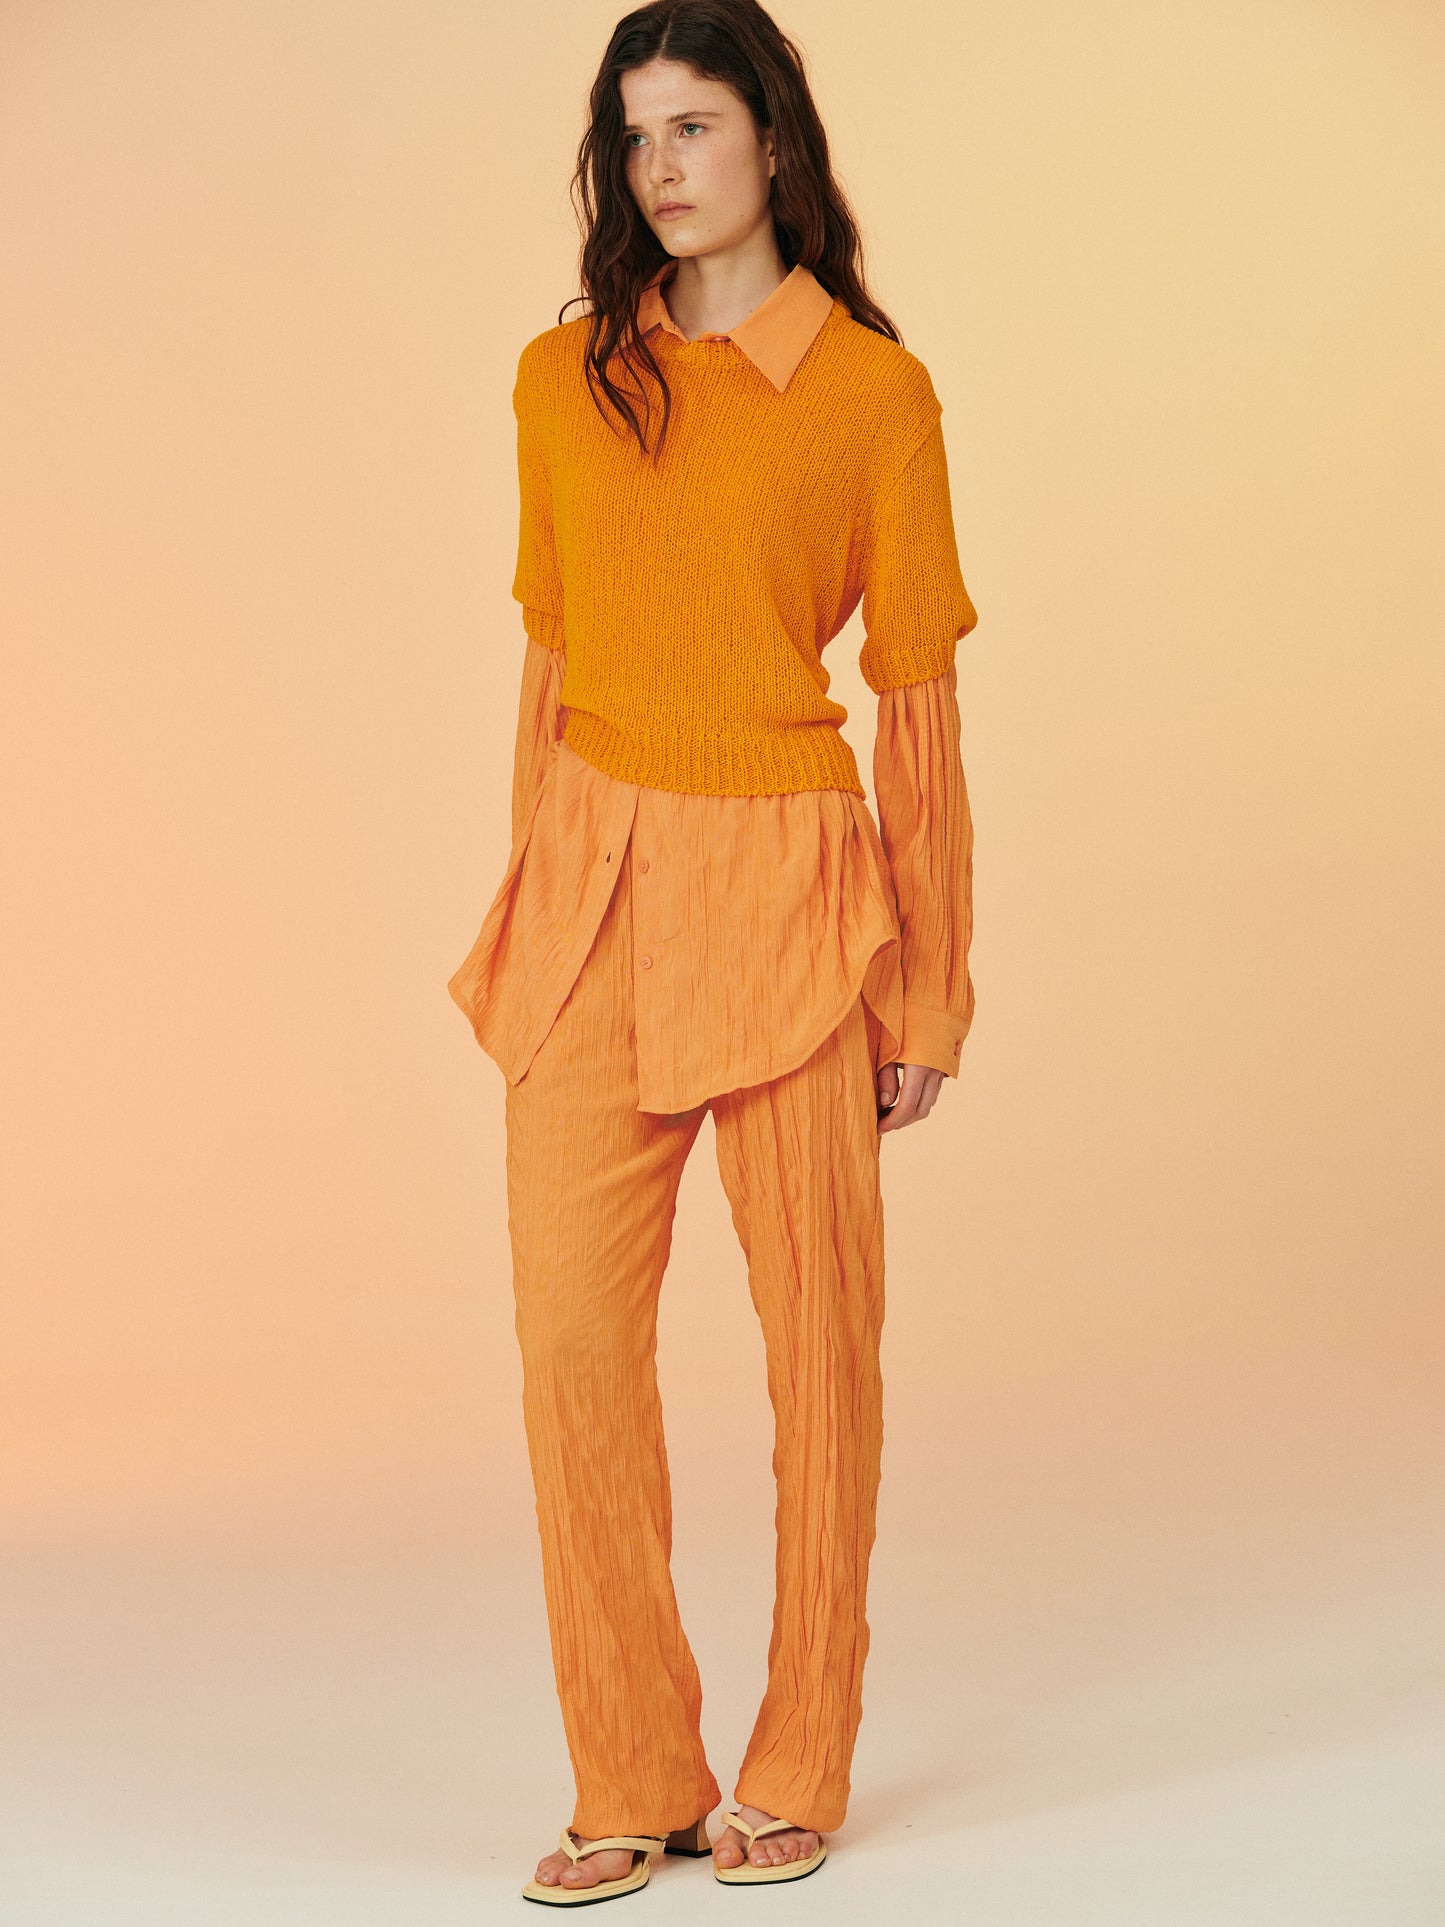 Crinkled Garment-Pleated Pants, Orange